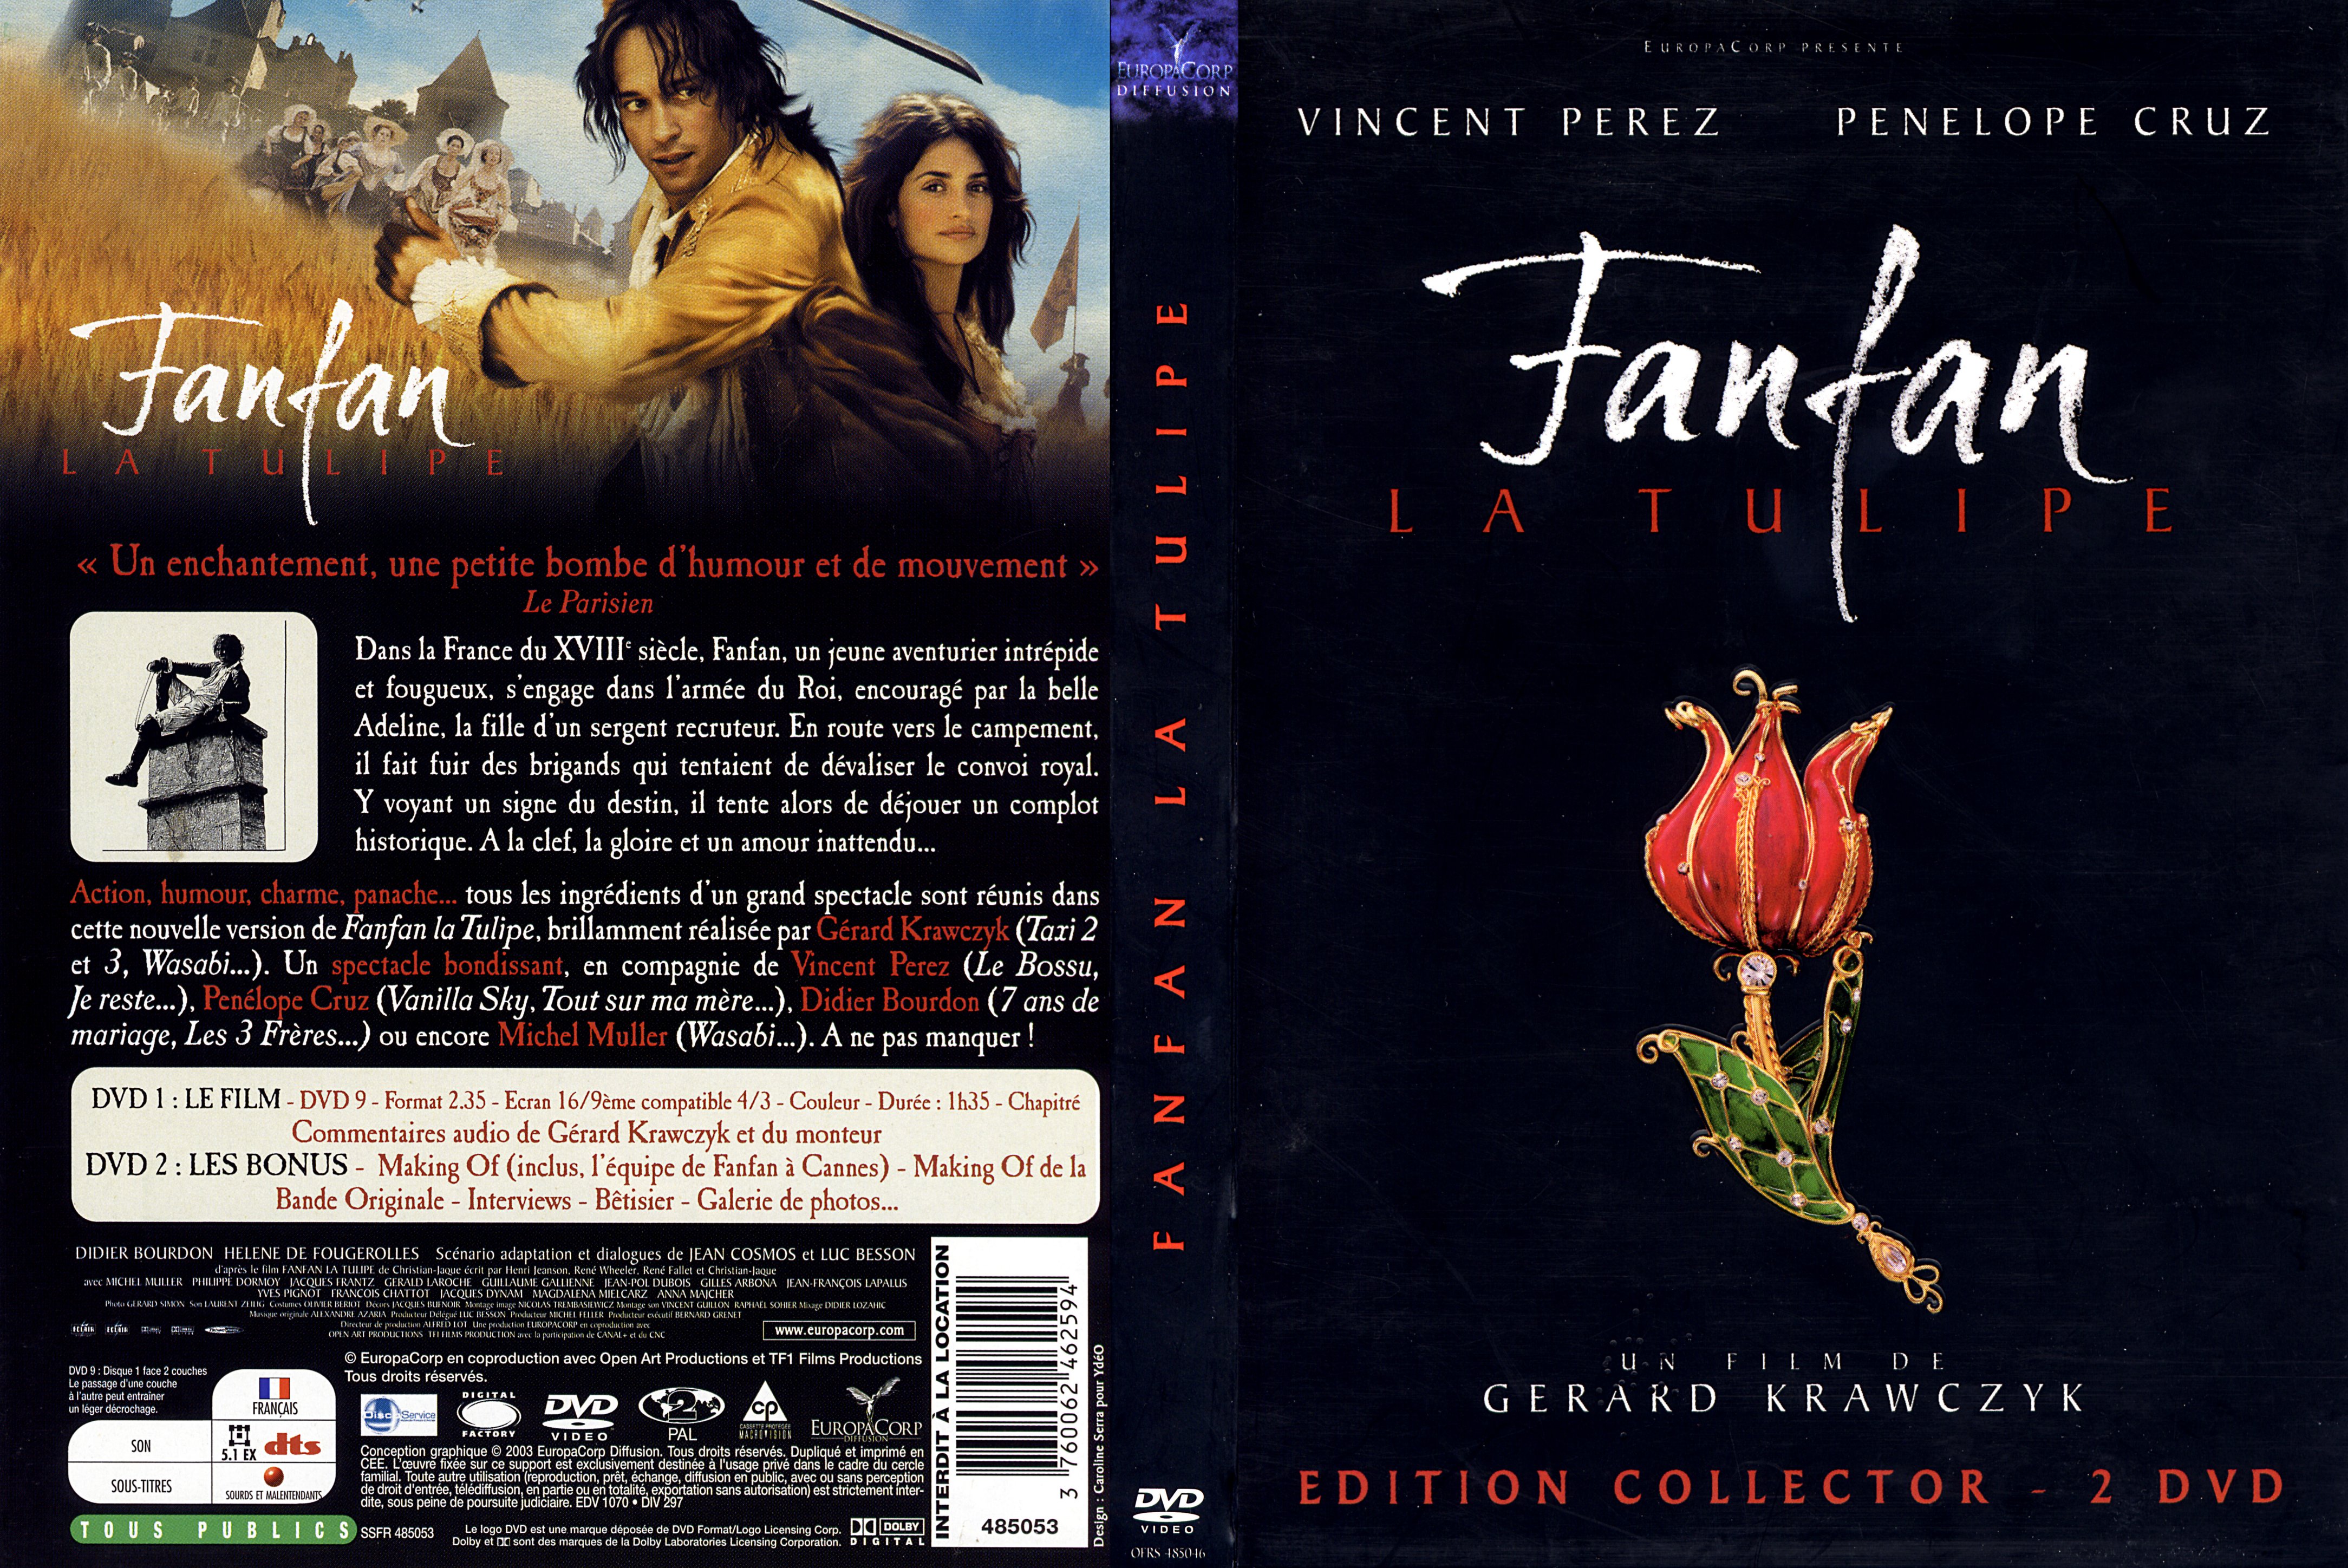 Jaquette DVD Fanfan la tulipe 2003 v2